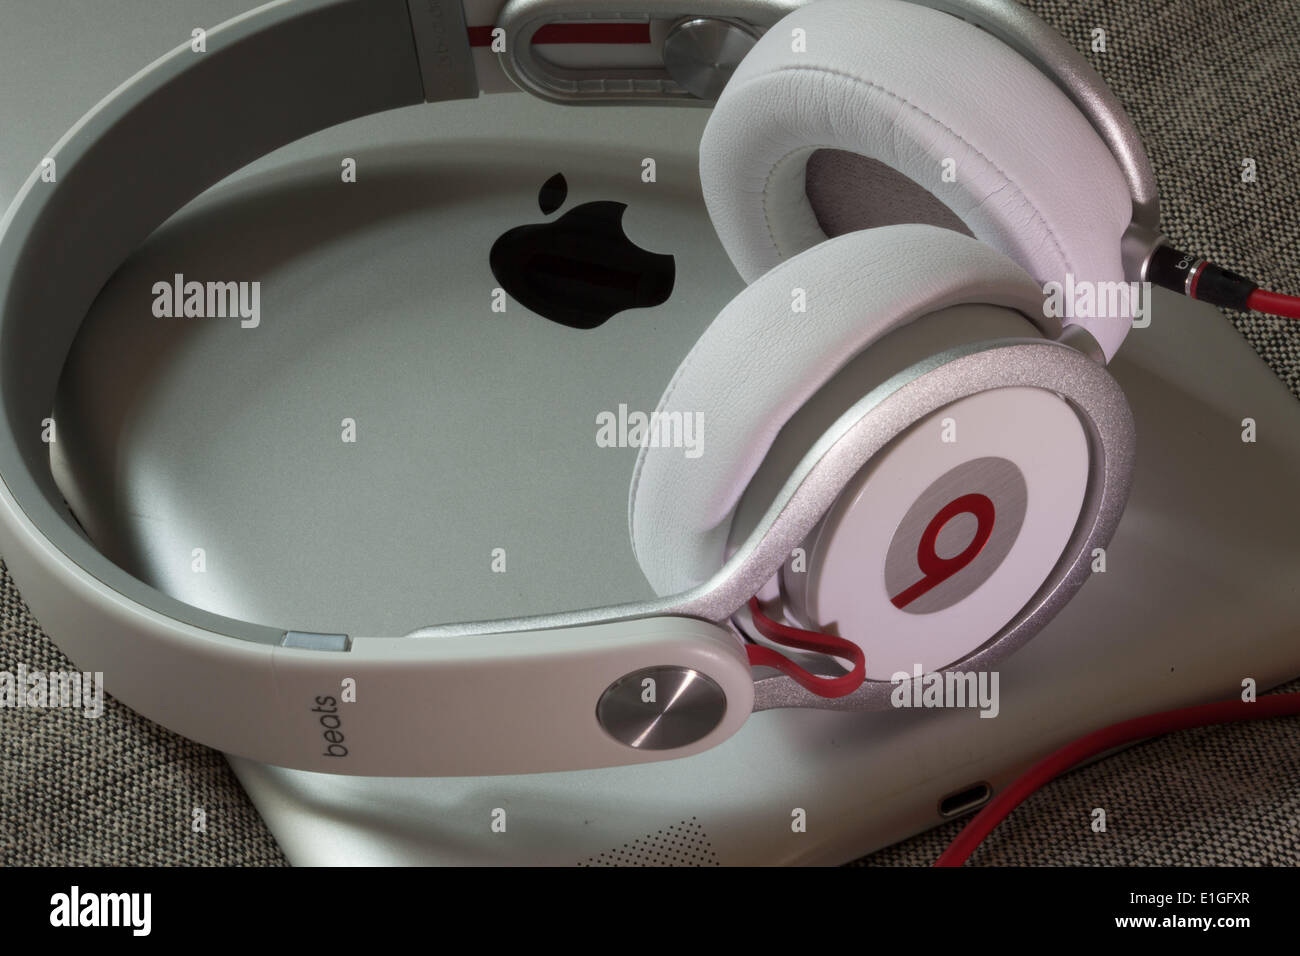 Beats by dre headphones immagini e fotografie stock ad alta risoluzione -  Alamy